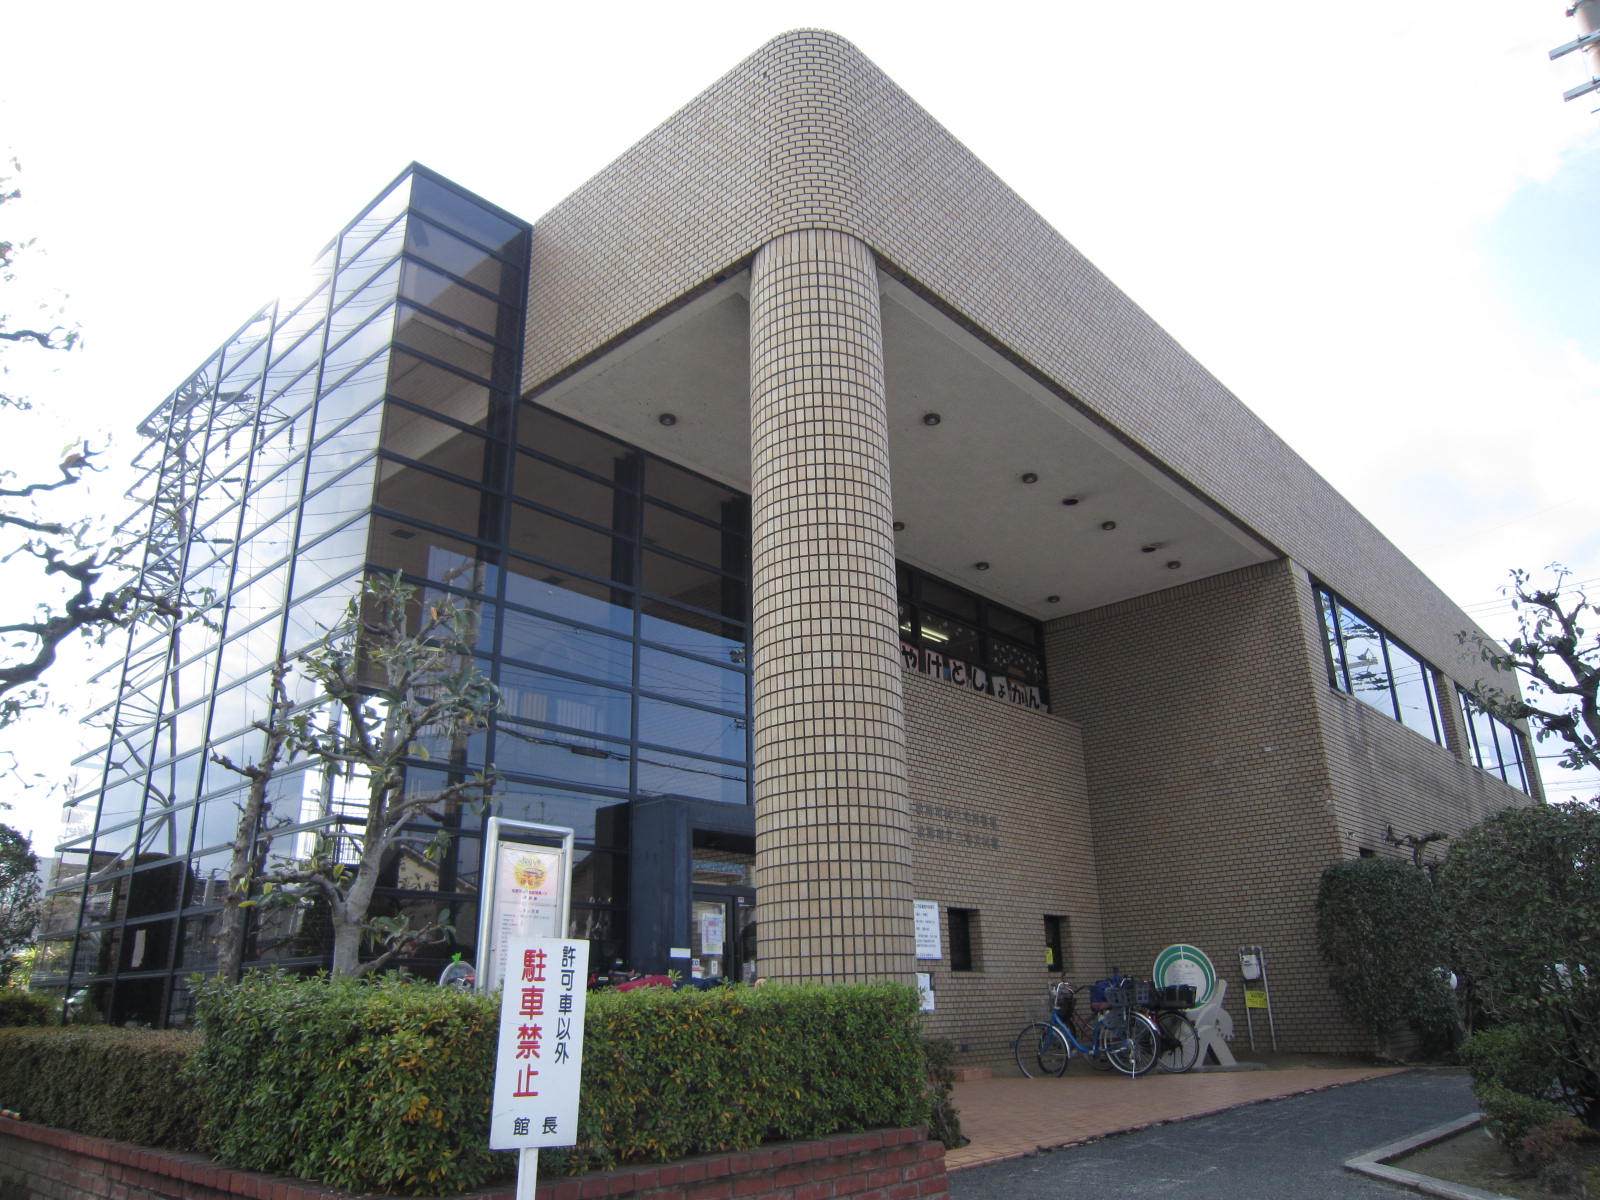 library. 873m to Matsubara citizen Miyake library (library)